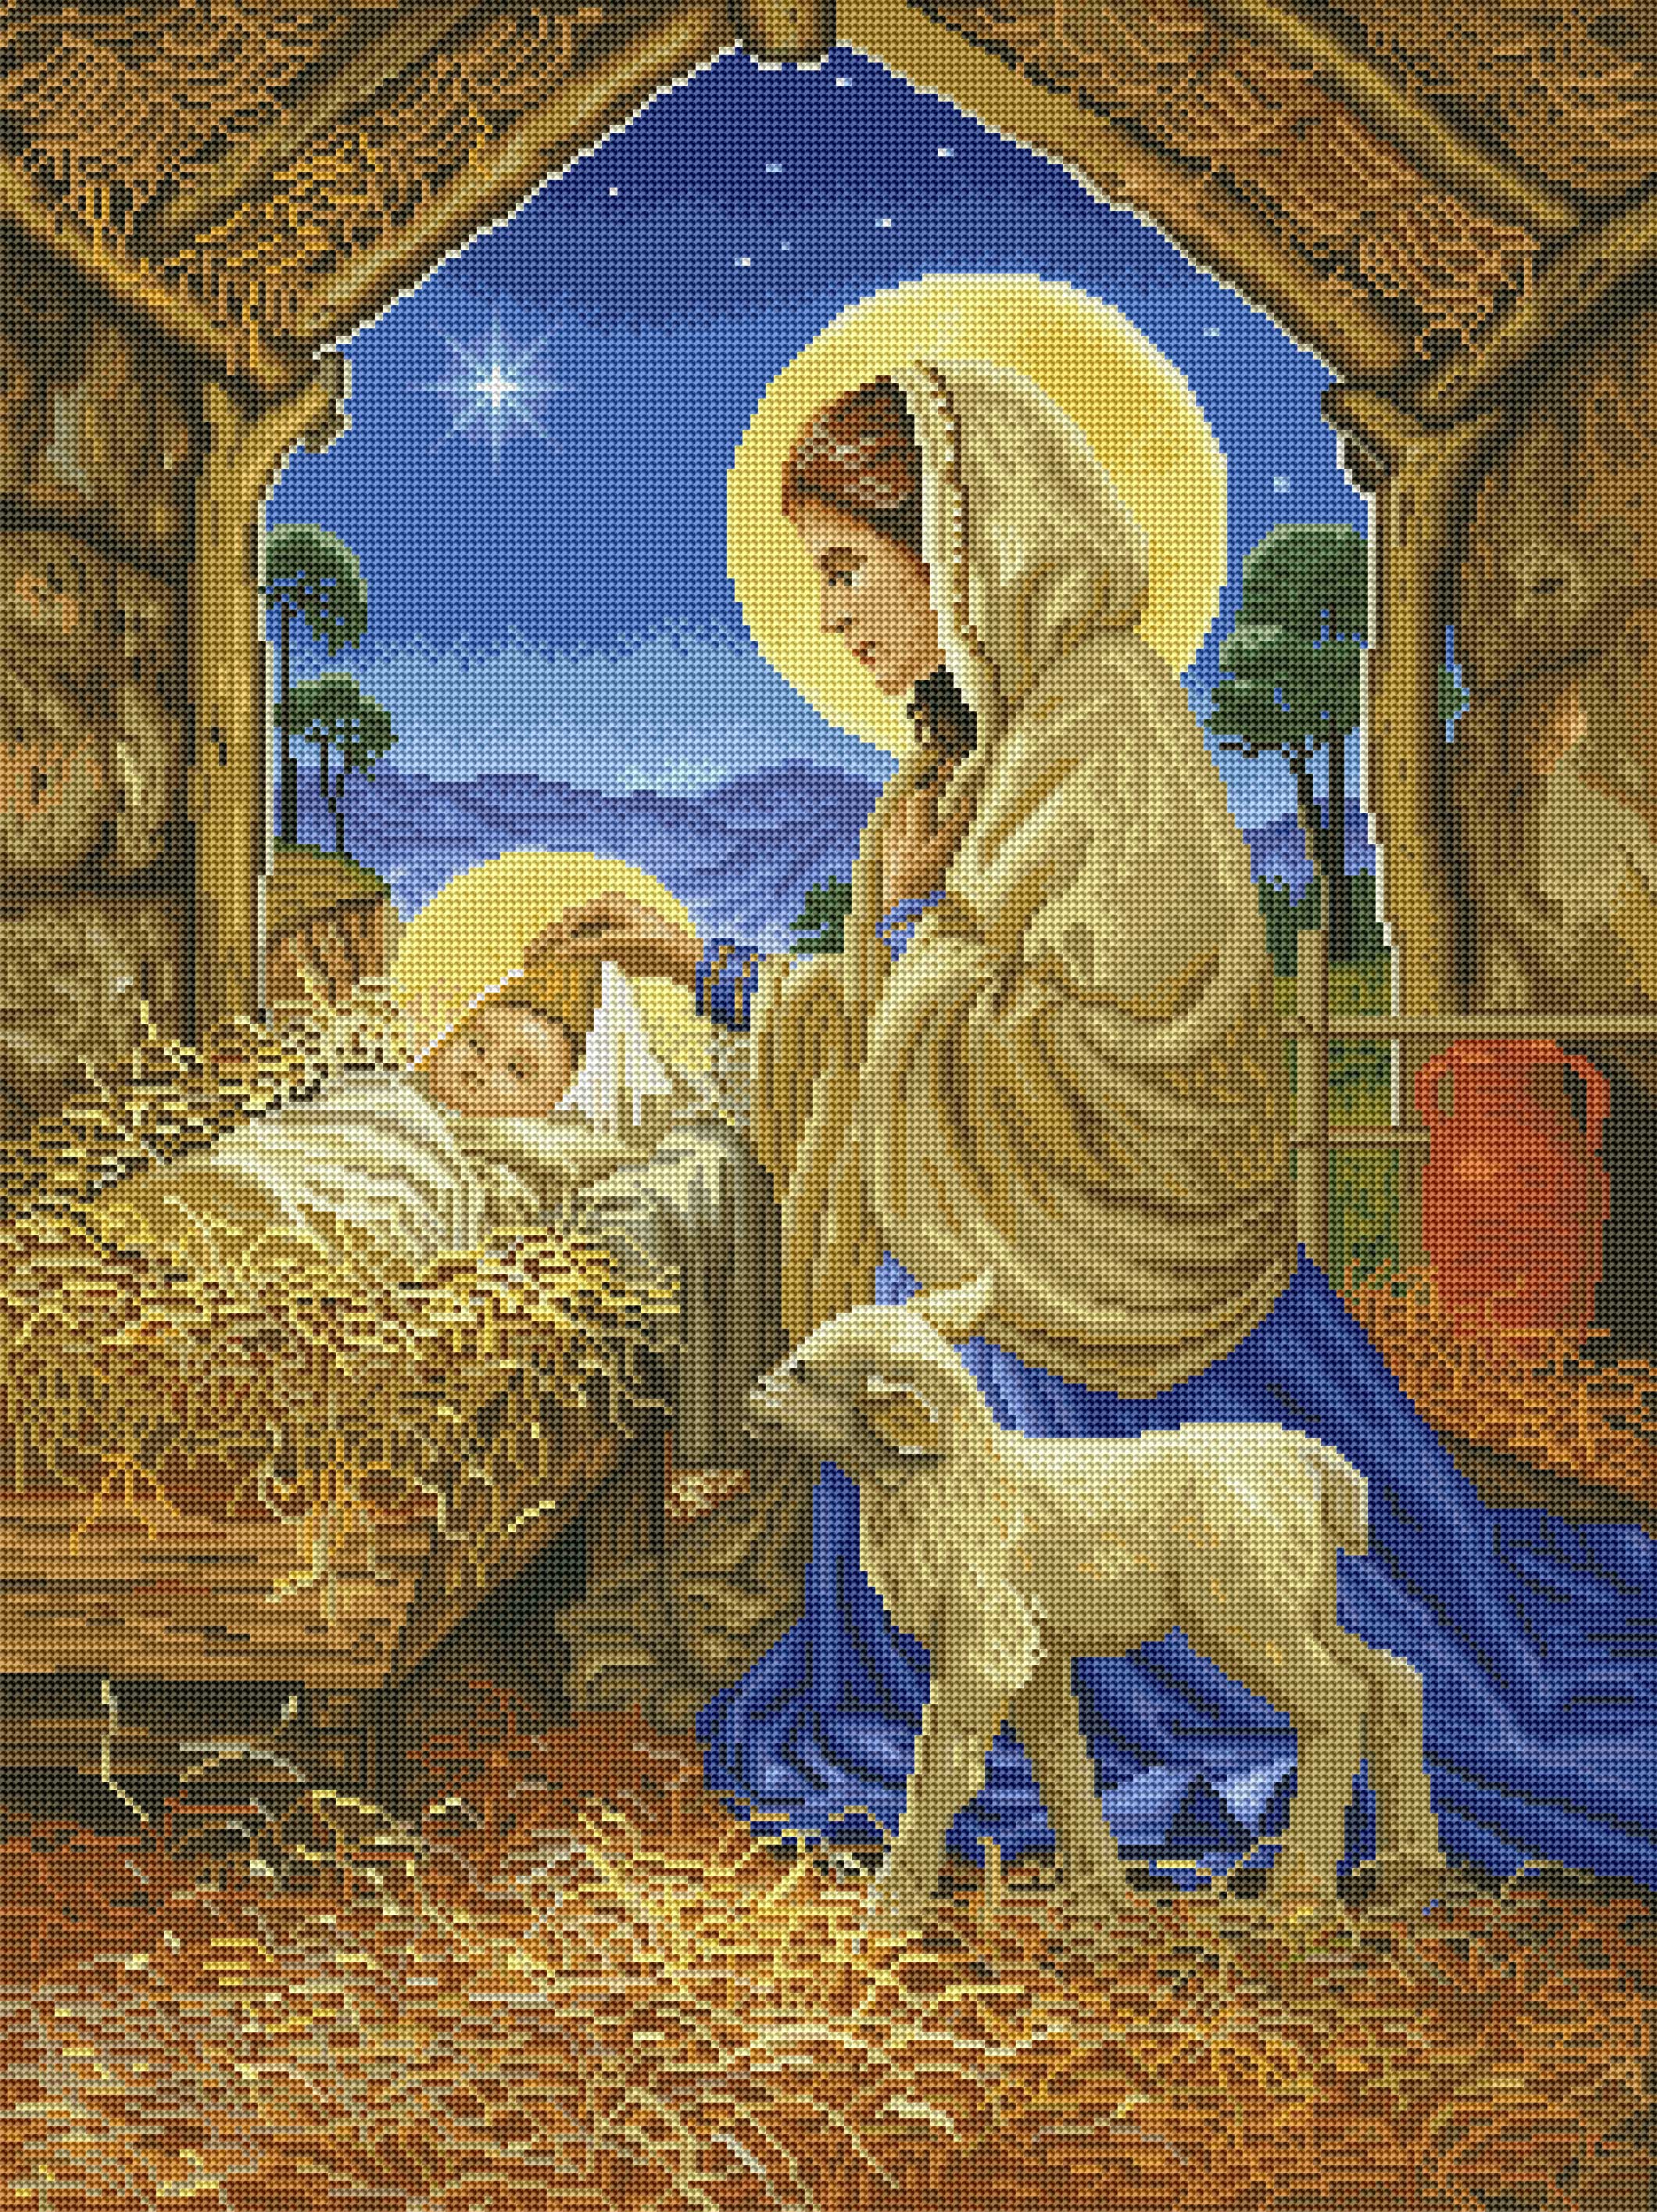 Mary and Lamb